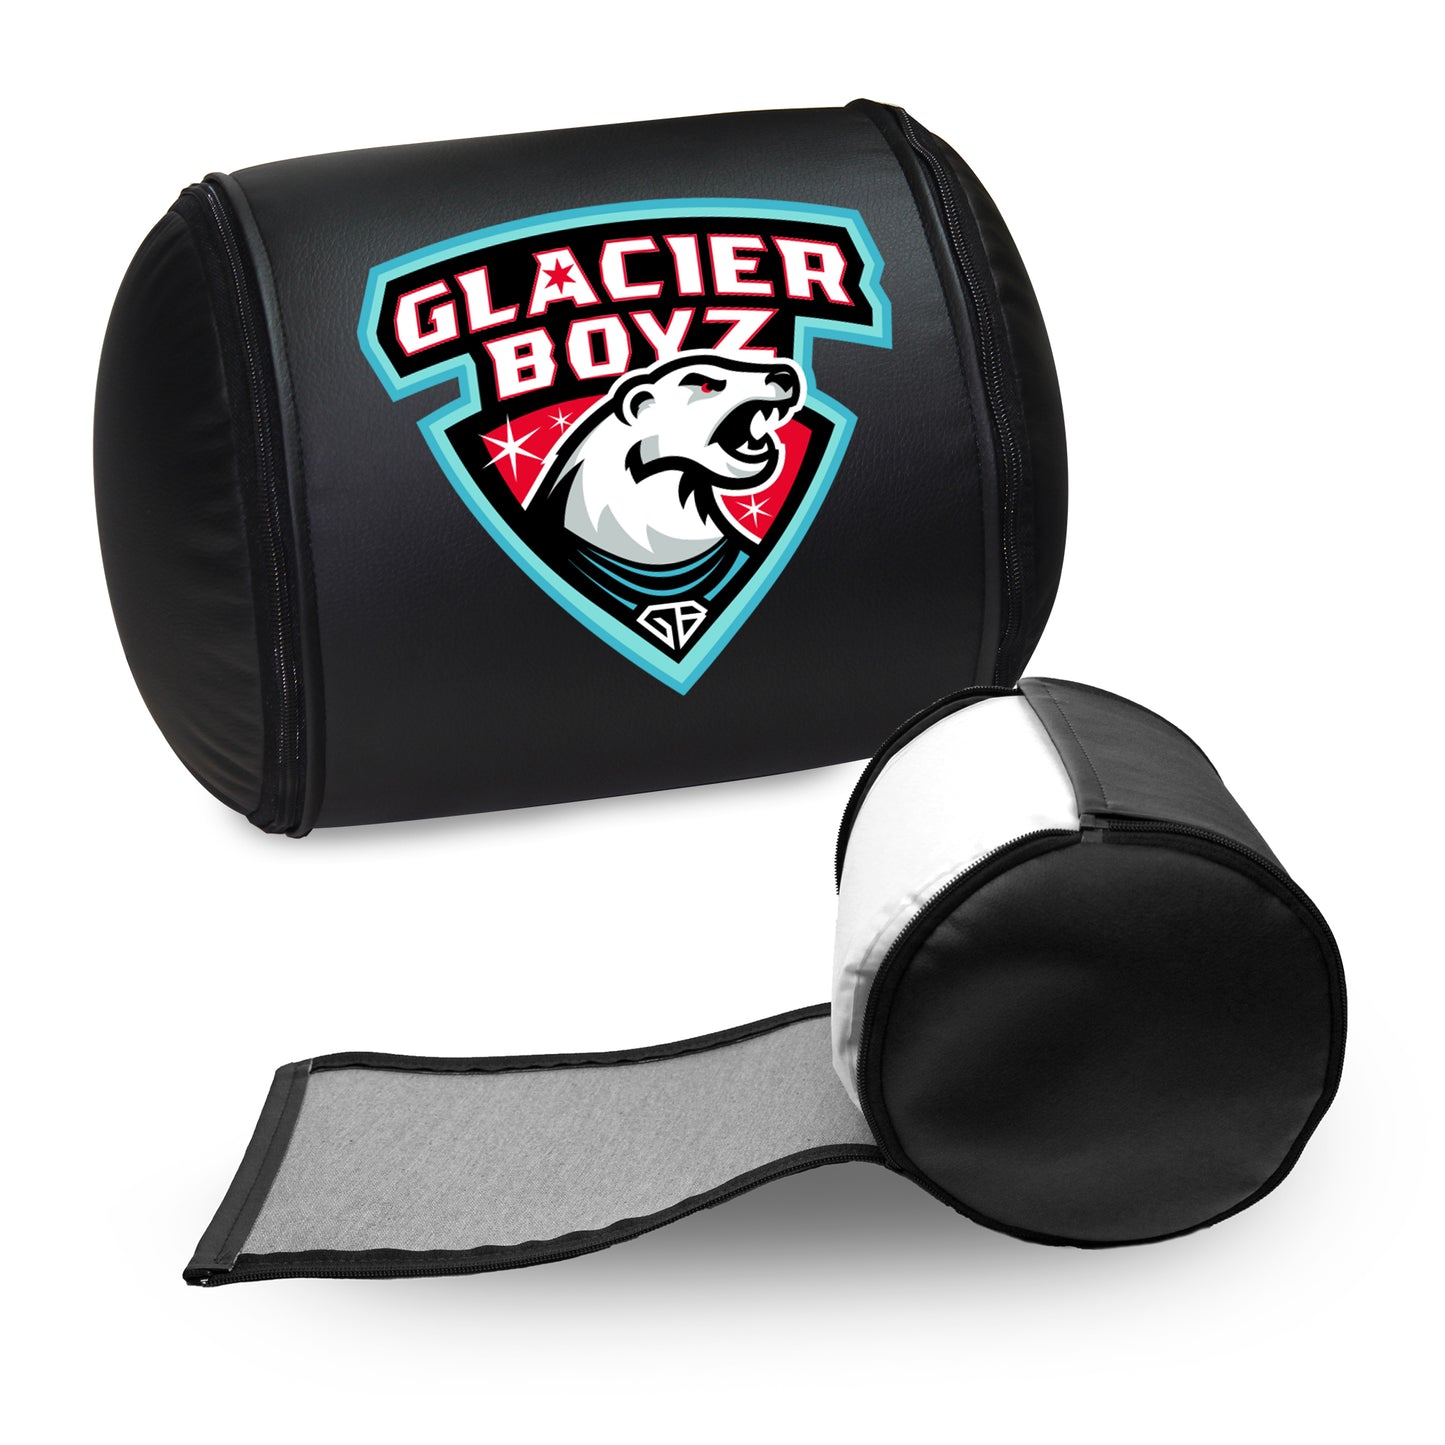 Glacier Boyz Logo Panel